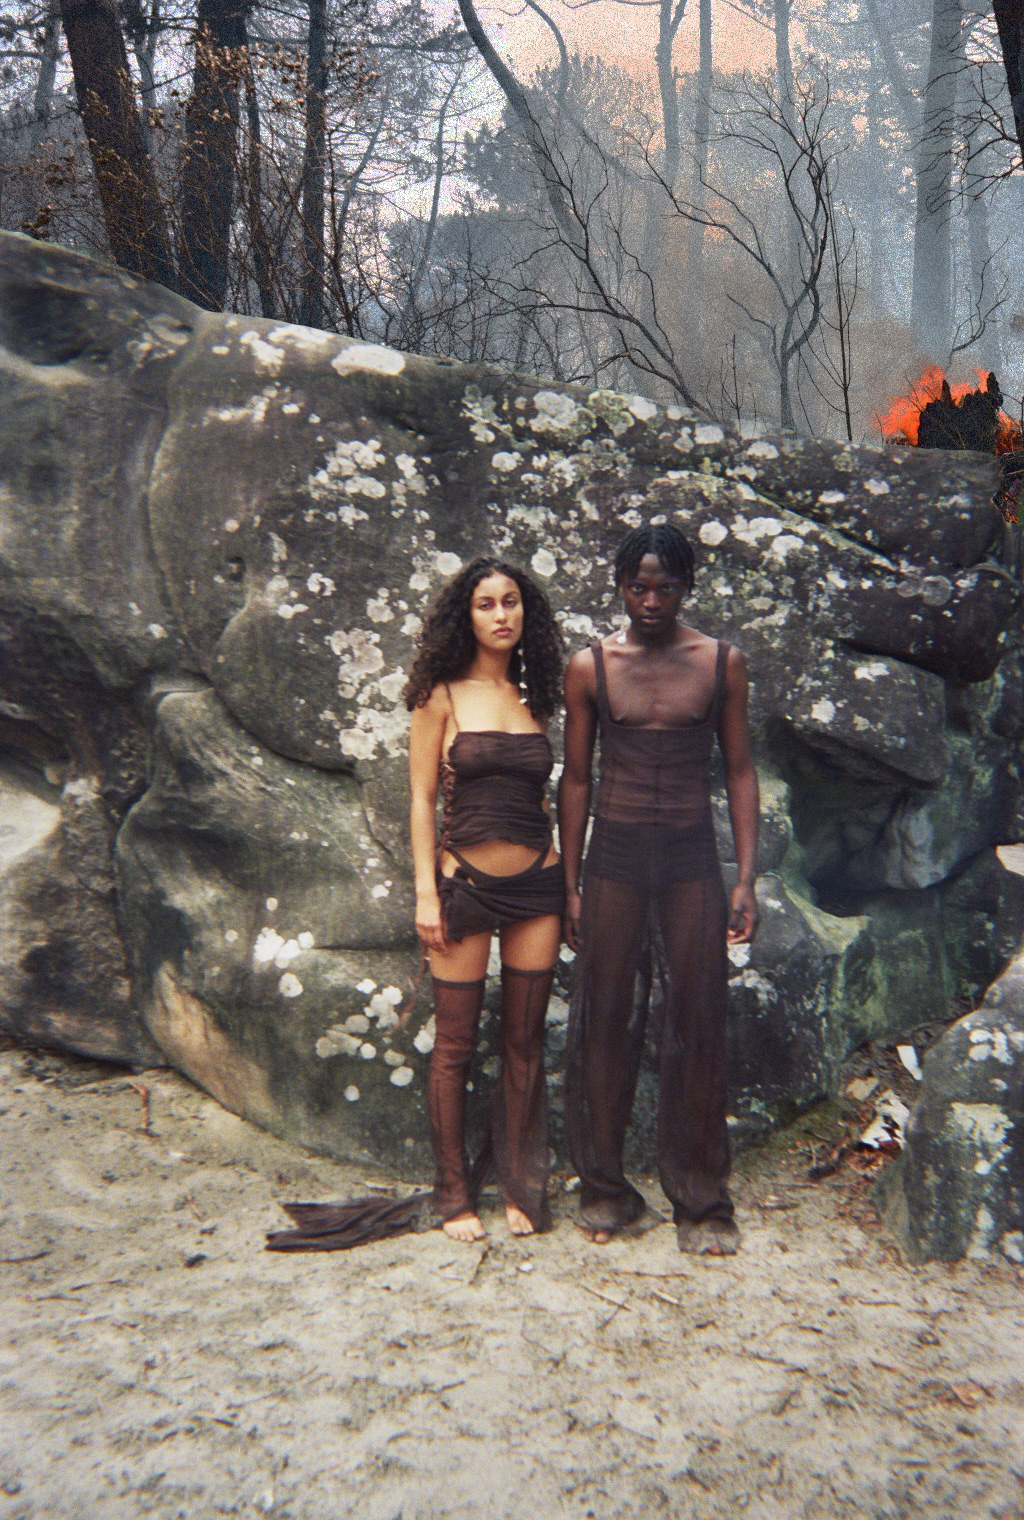 Une homme et une femme se tiennent devant un rocher, sur un sol sableux. La forêt derrière est sombre, et une flamme apparait.